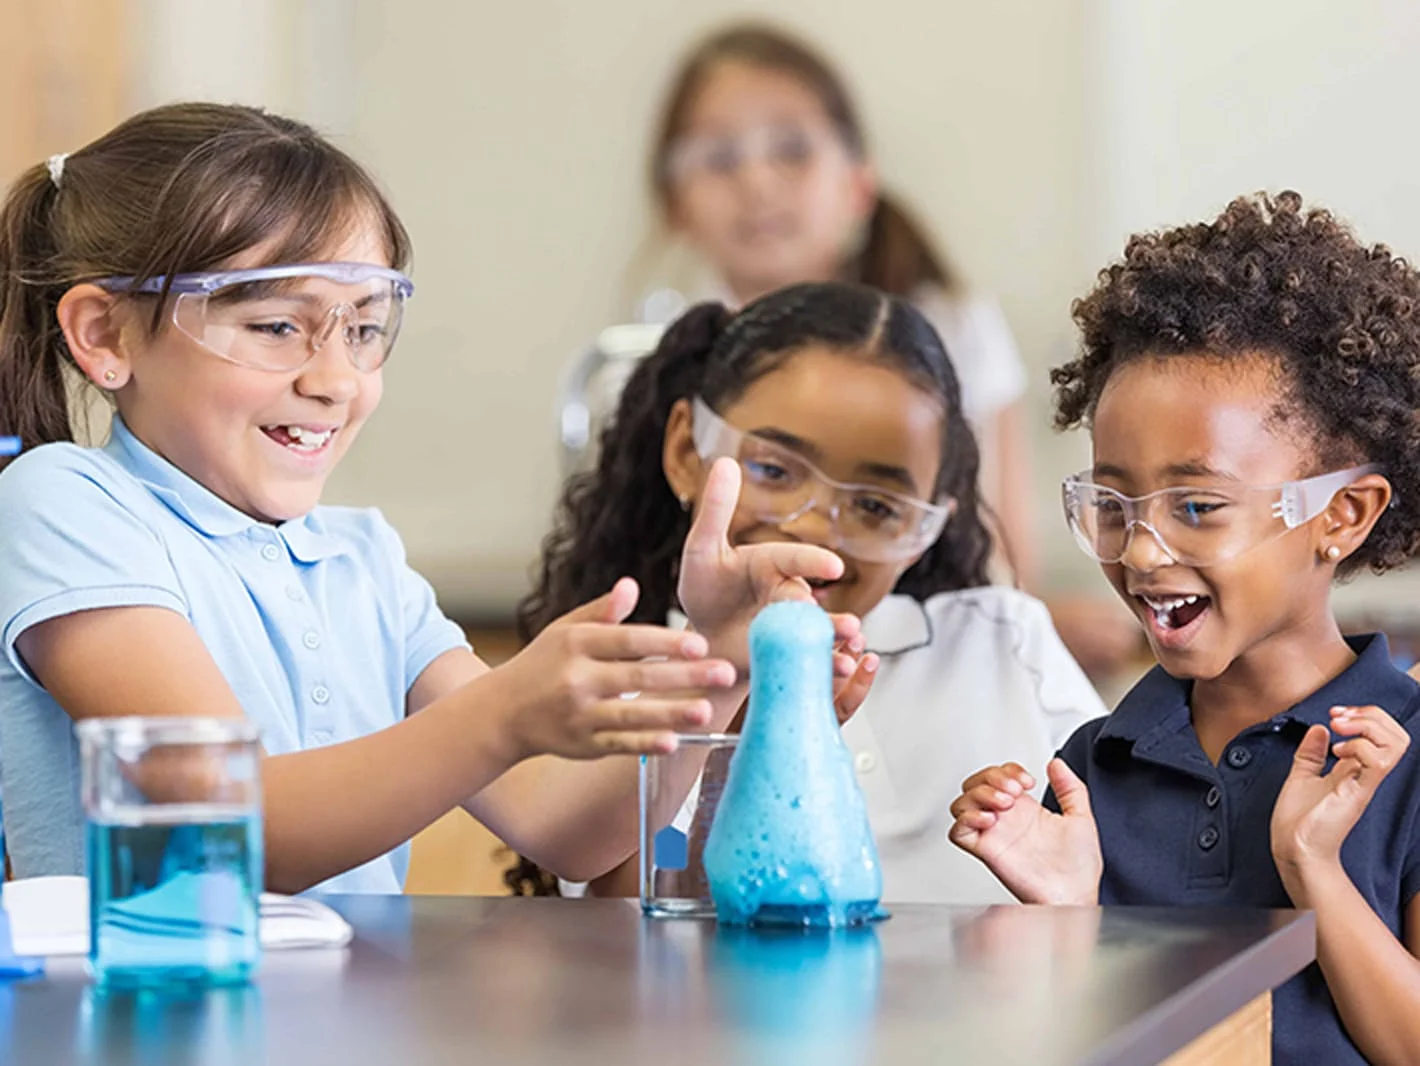 Crianças pequenas usando um kit de química juntas